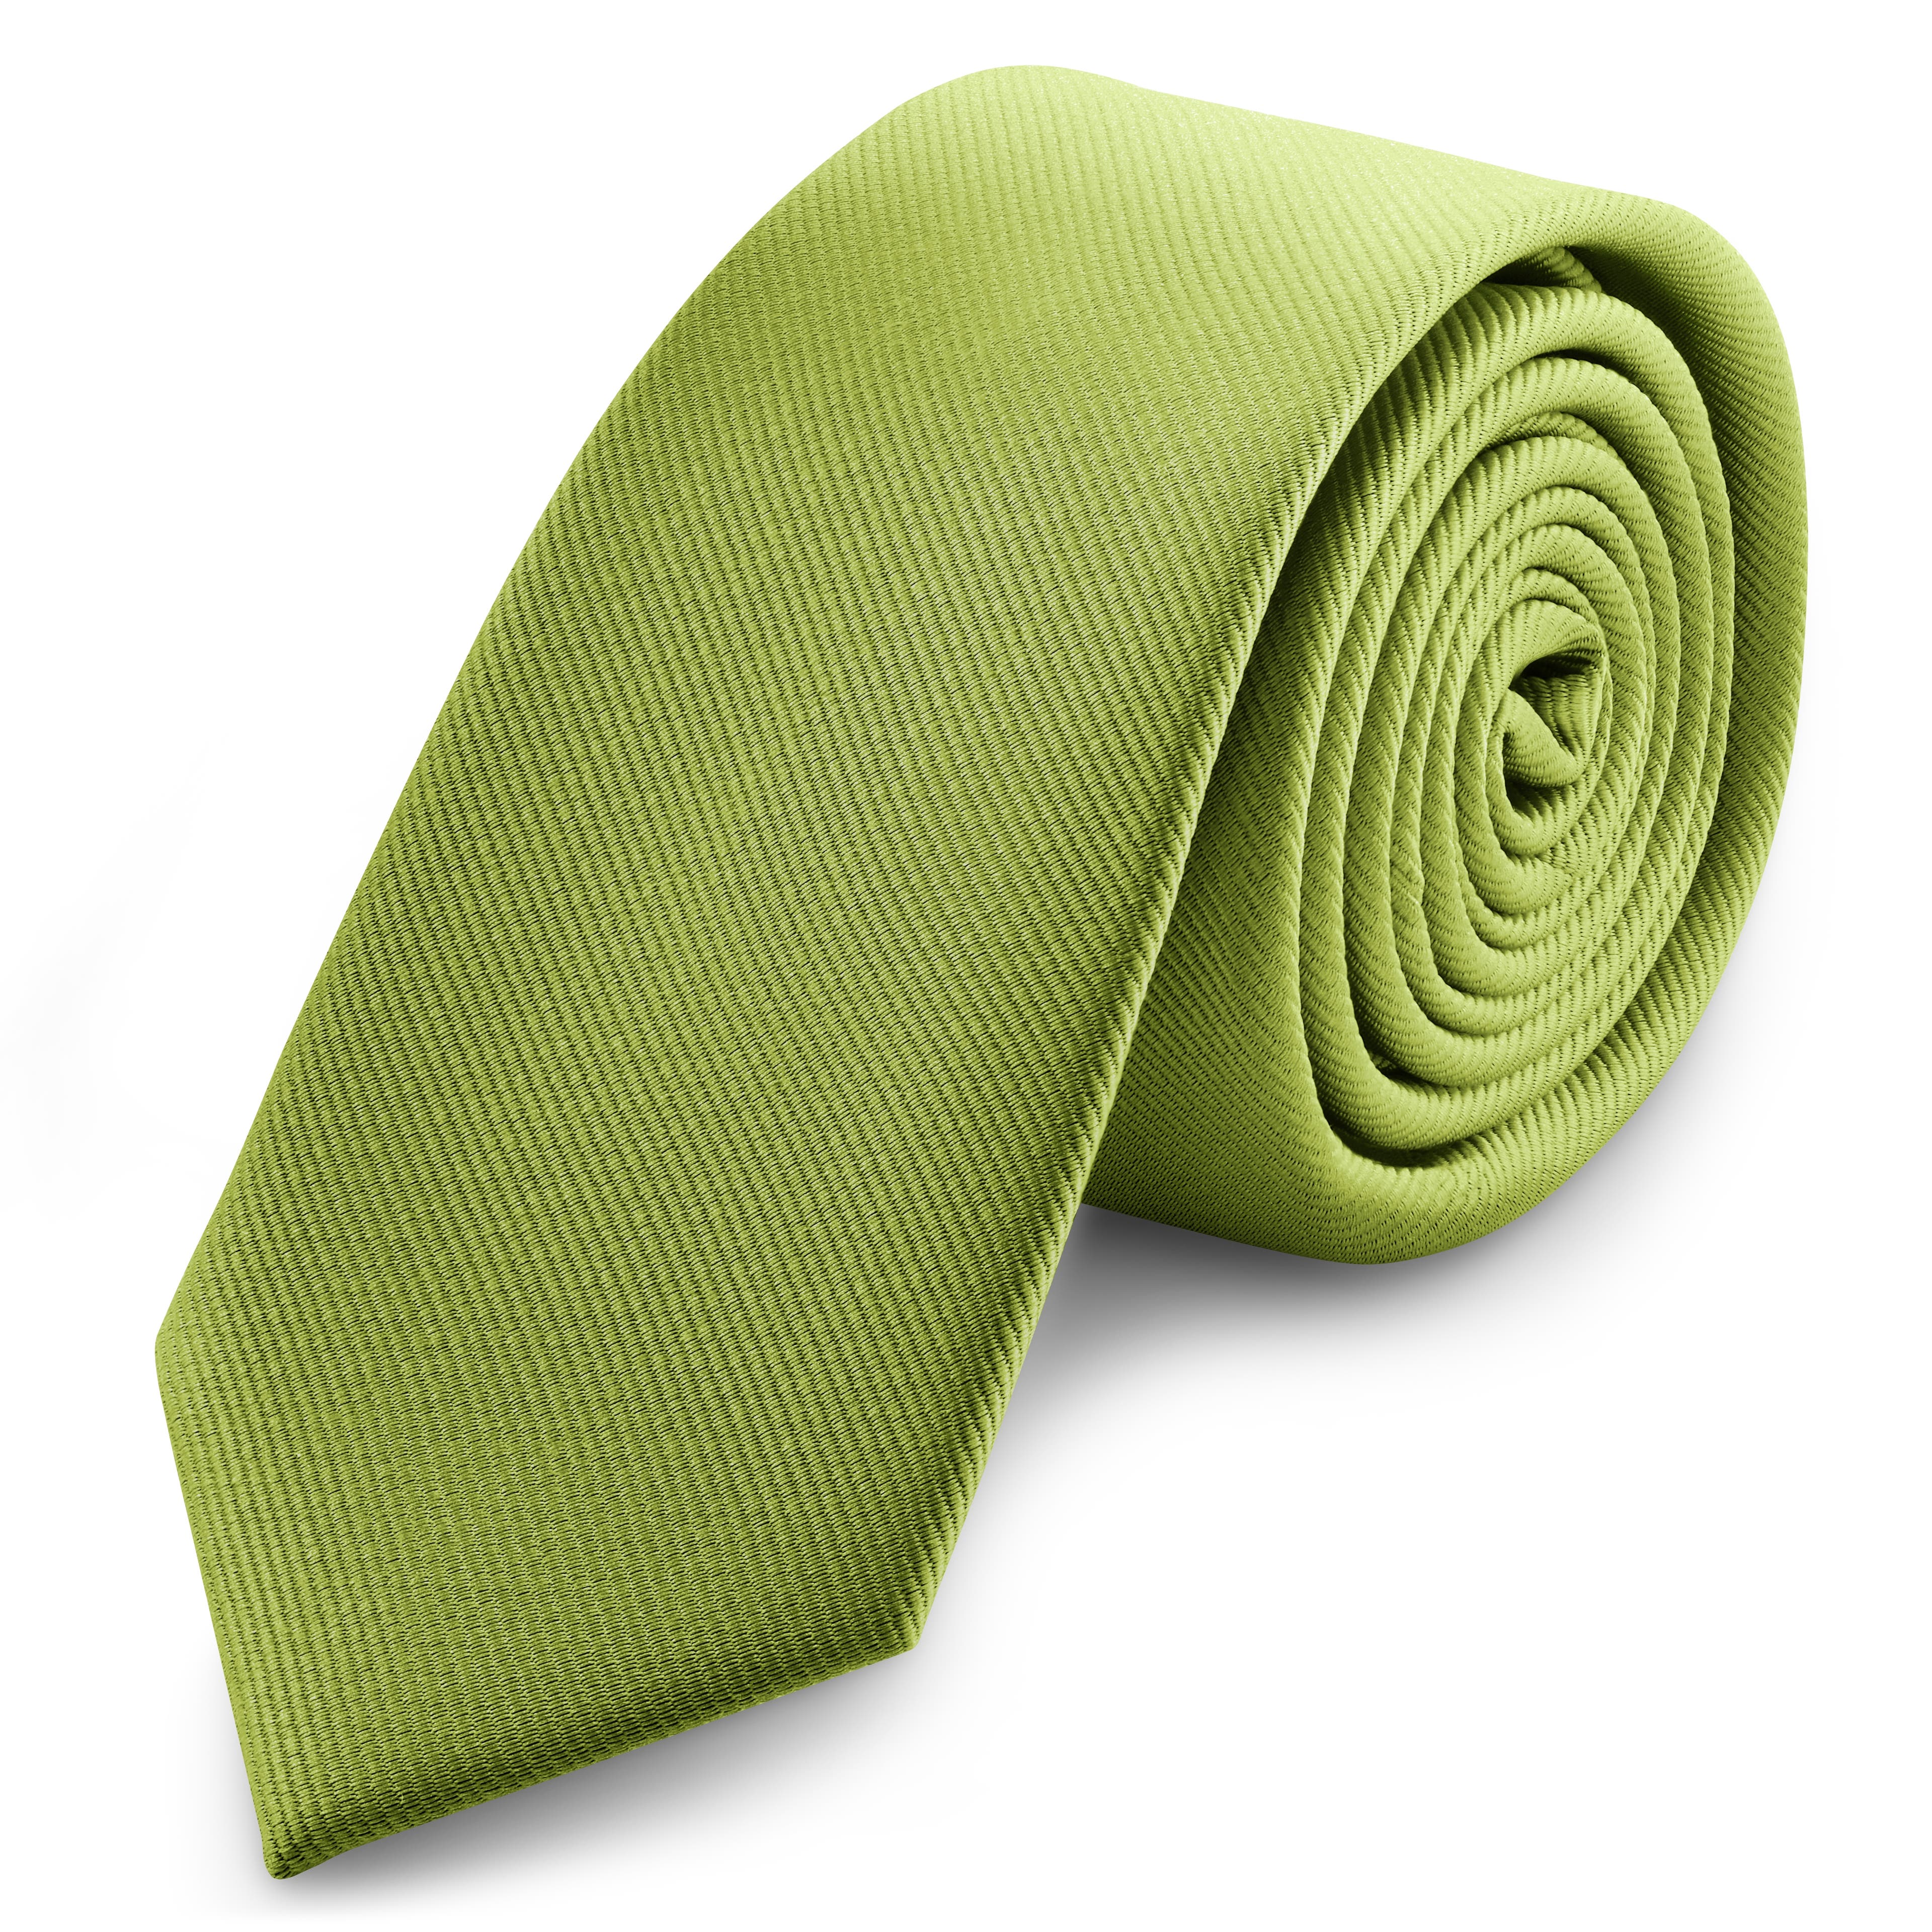 2 3/8" (6 cm) Sea Green Grosgrain Skinny Tie